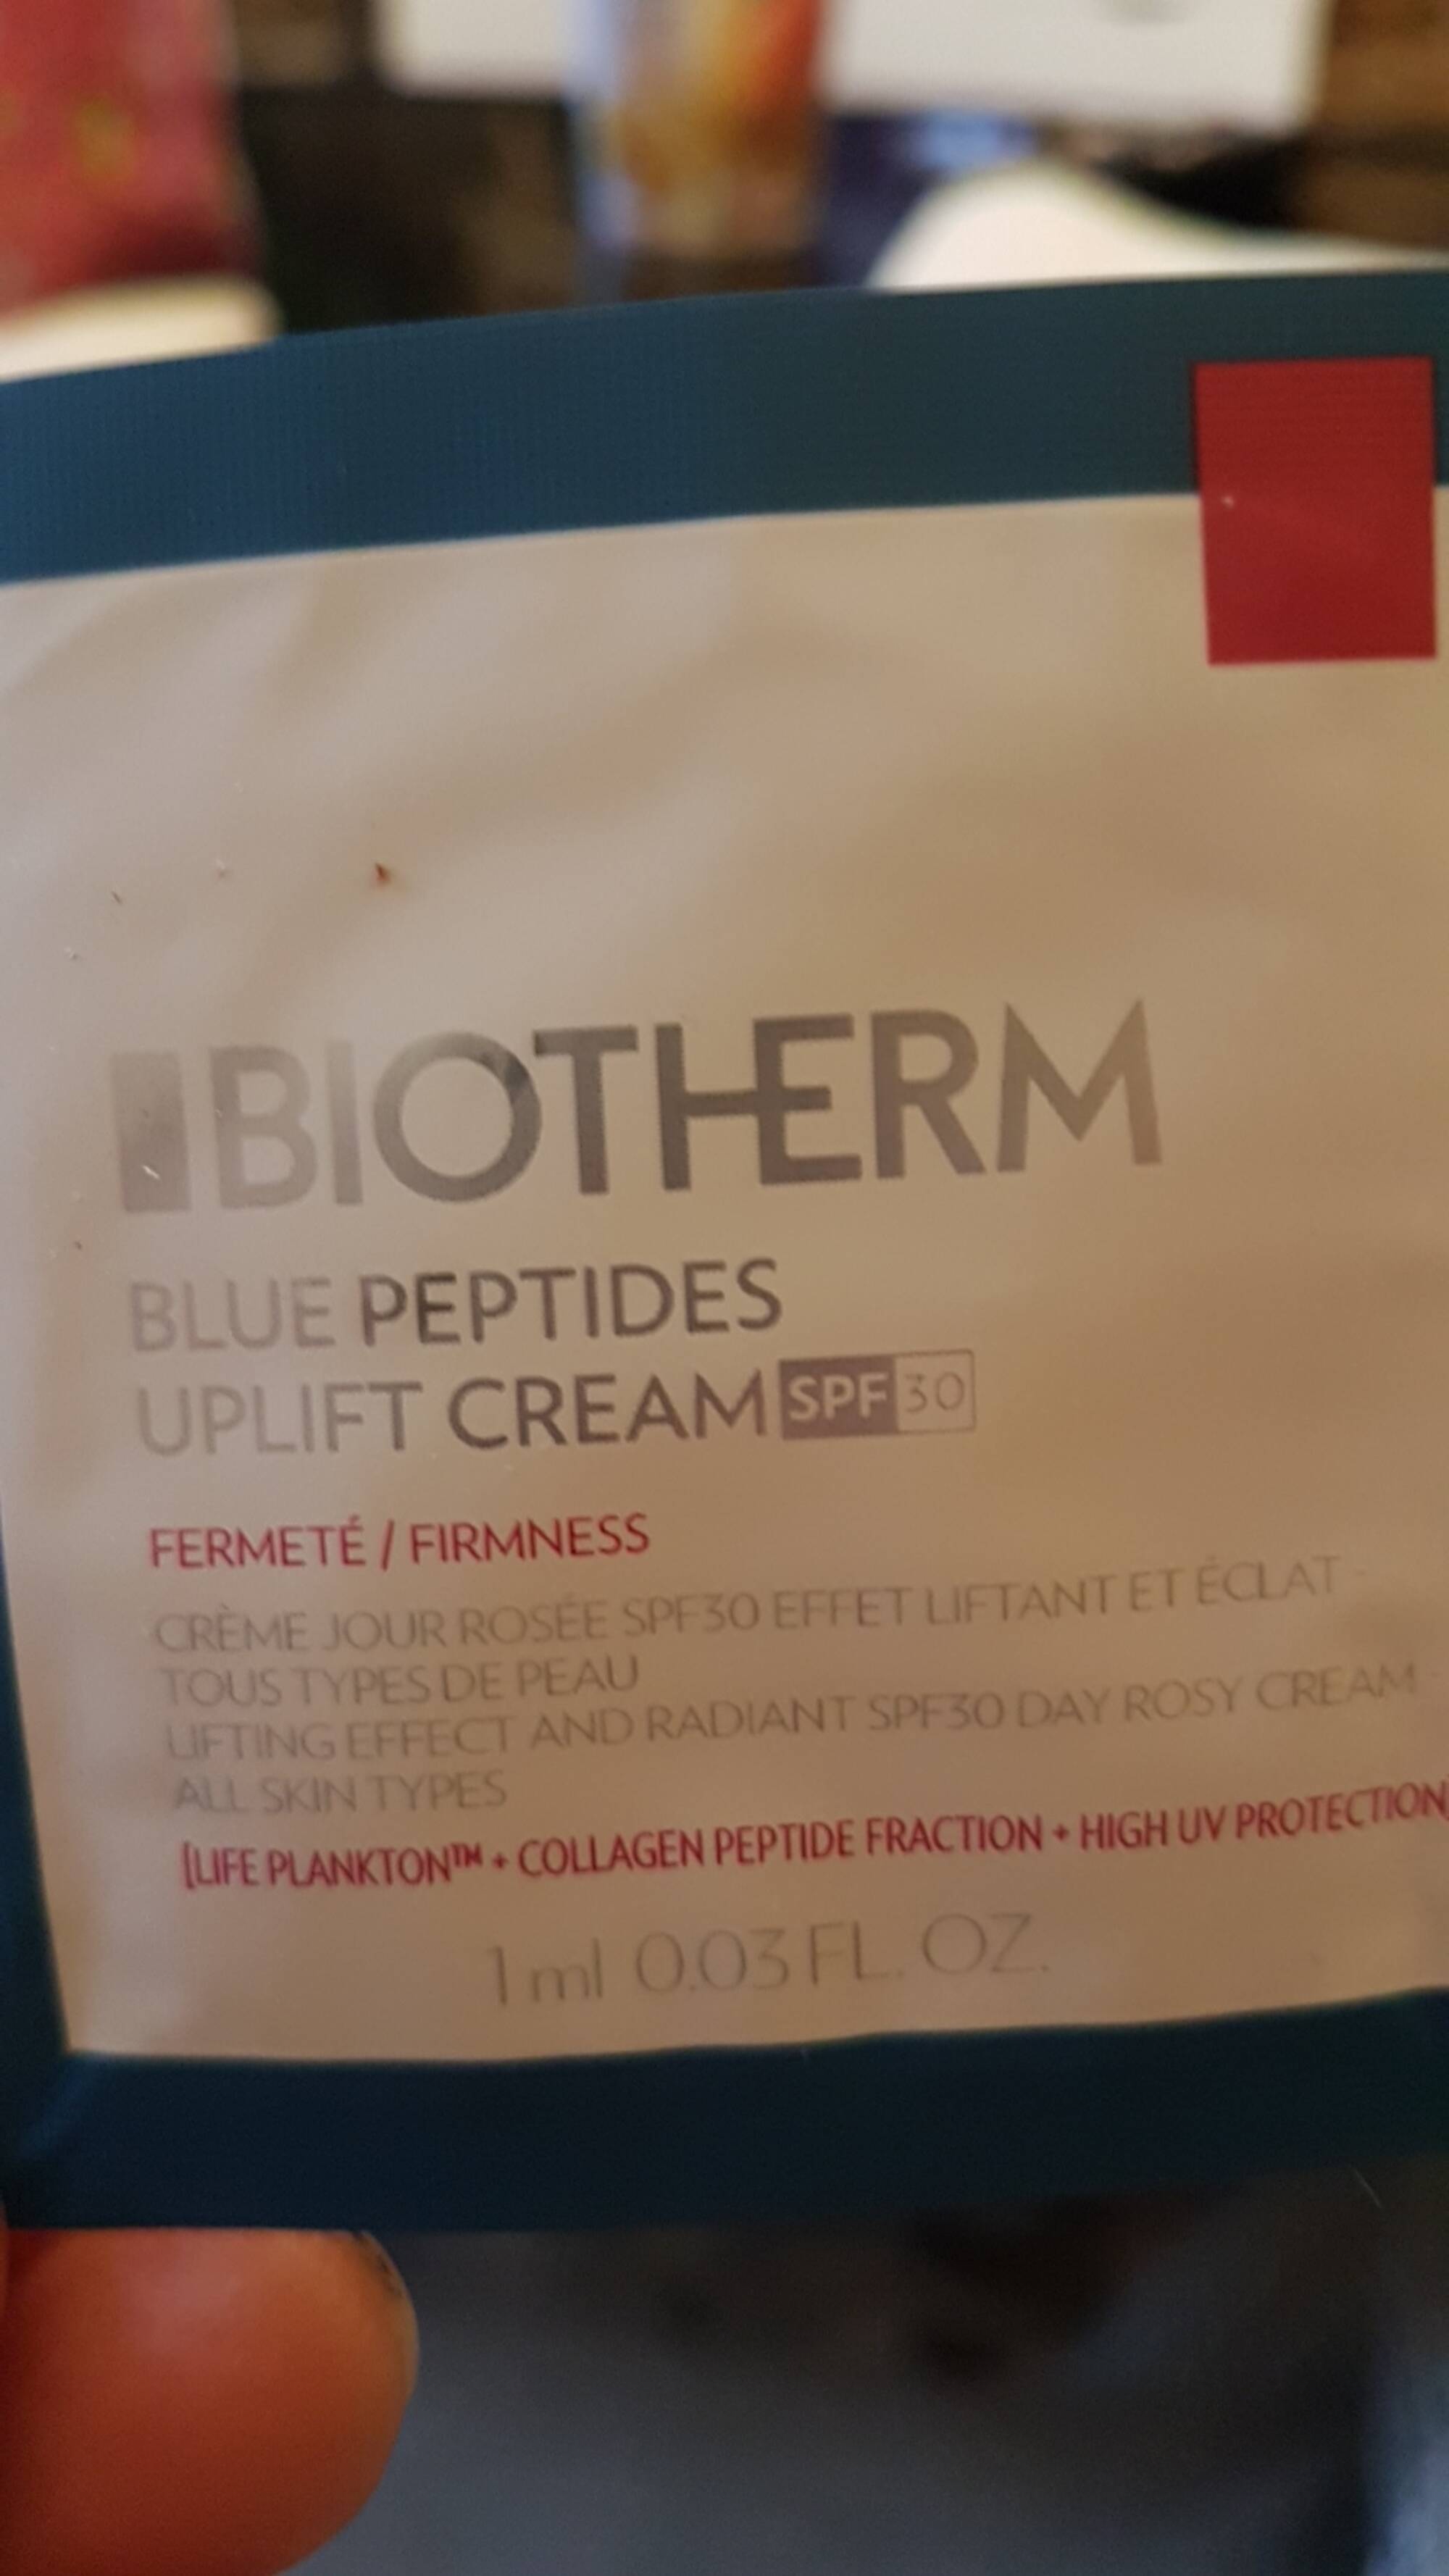 BIOTHERM - Blue peptides - Crème jour rosée SPF 30